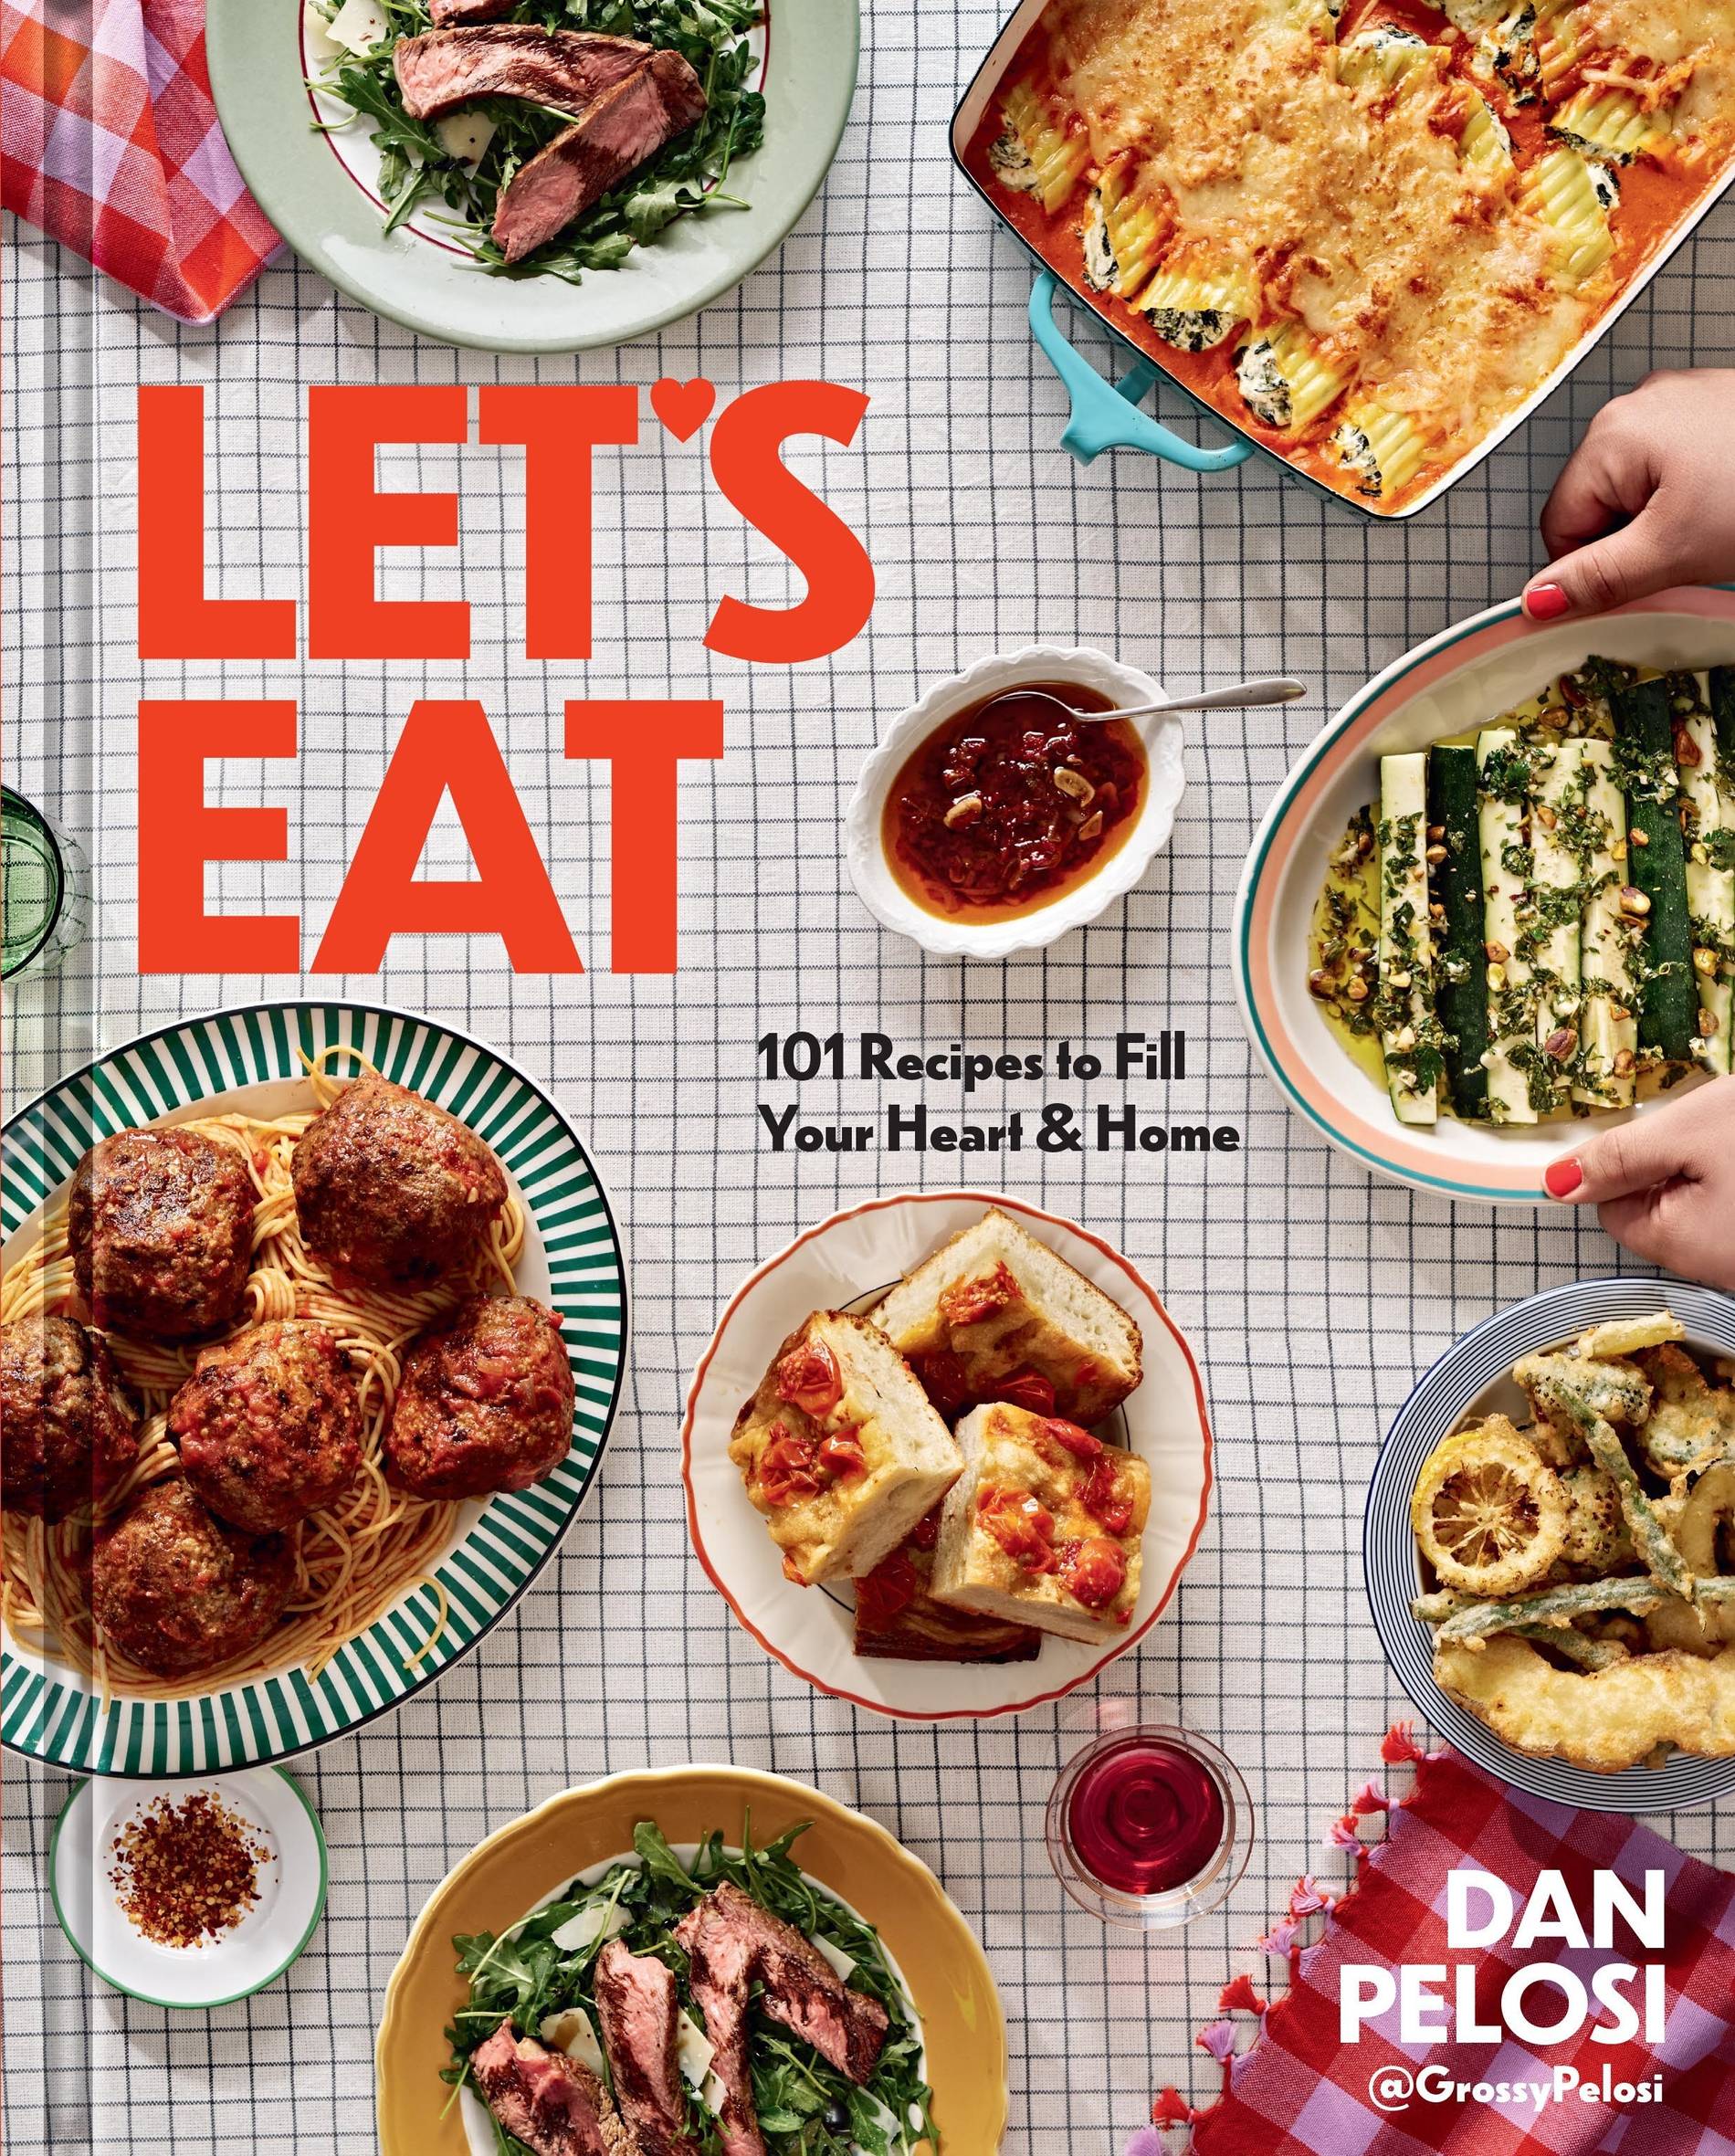 Dan Pelosi's cookbook Let's Eat